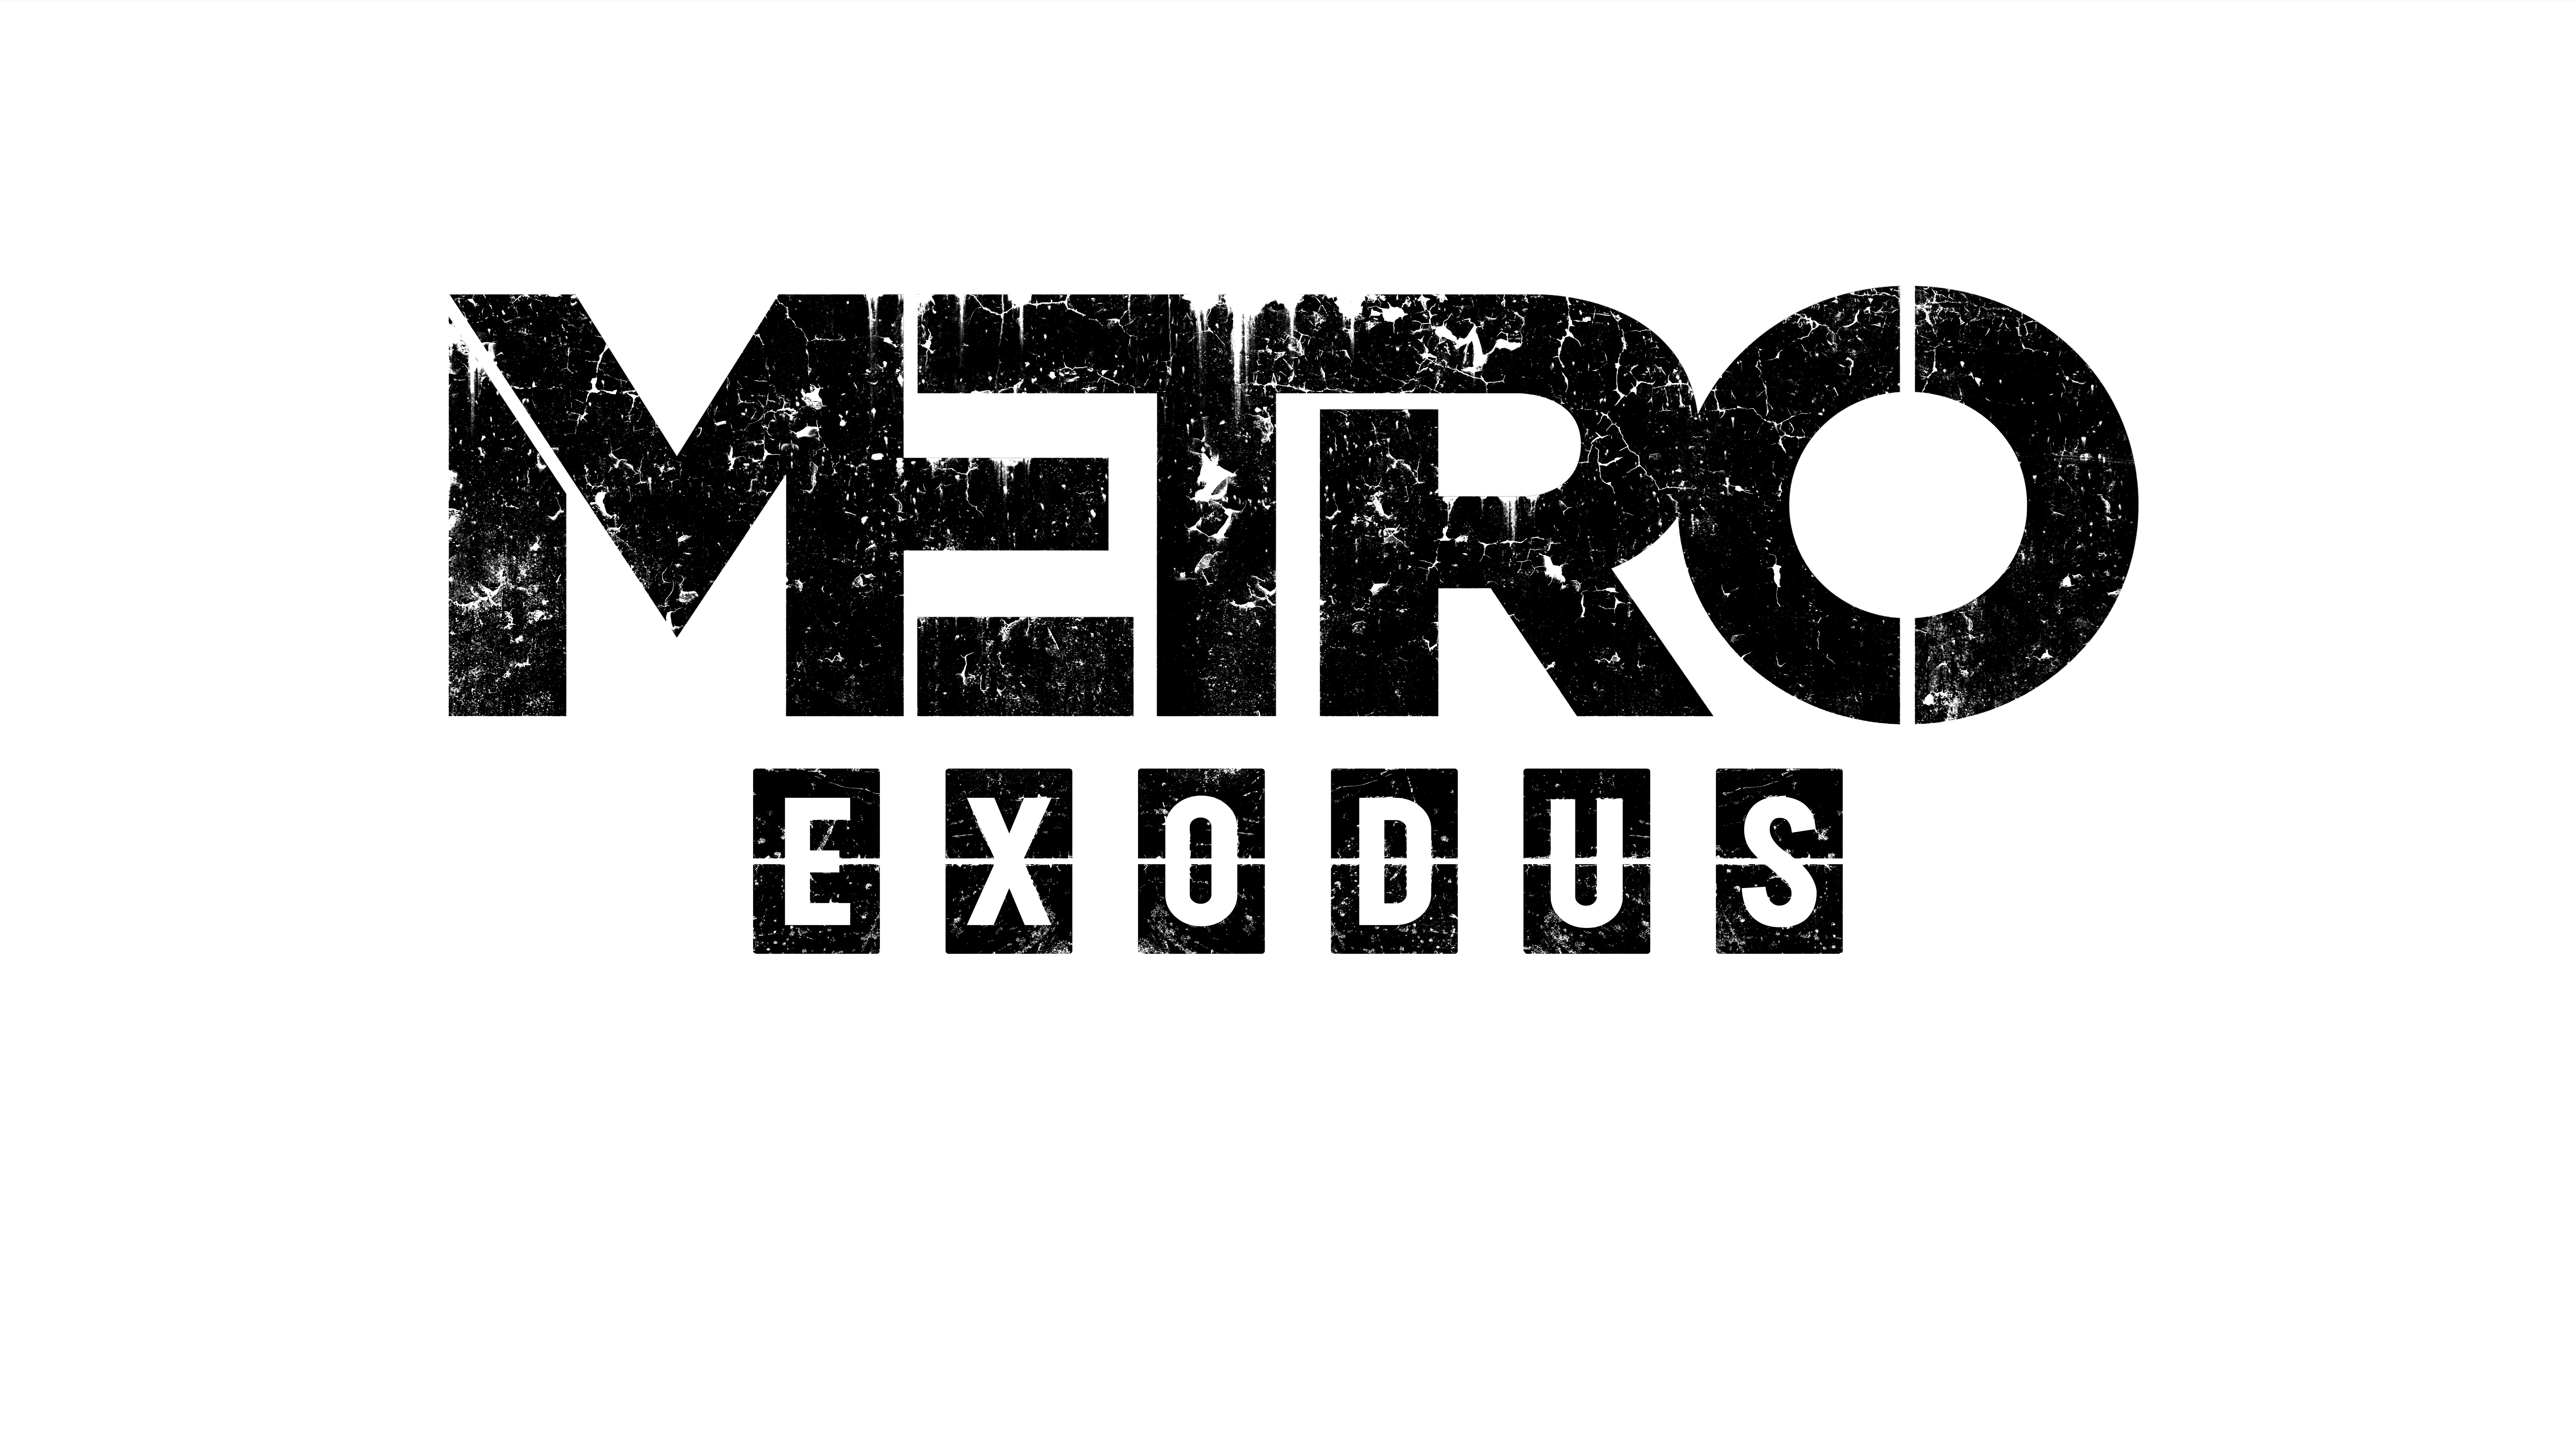 Metro Exodus Logo - Metro Exodus Logo PNG Image - PurePNG | Free transparent CC0 PNG ...